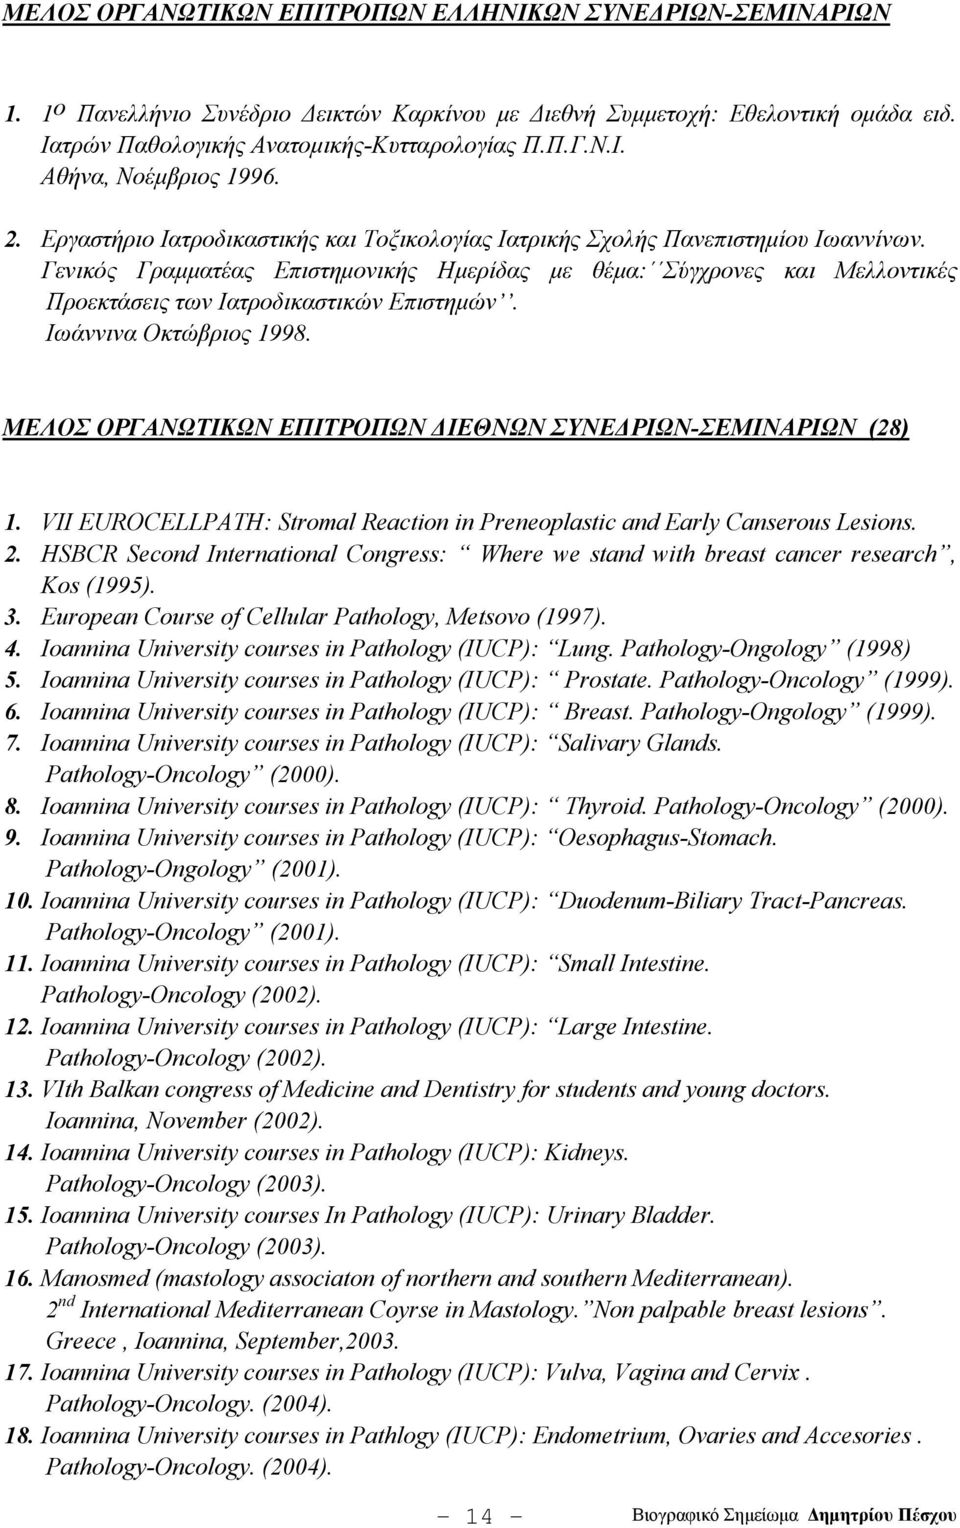 Γενικός Γραμματέας Επιστημονικής Ημερίδας με θέμα: Σύγχρονες και Μελλοντικές Προεκτάσεις των Ιατροδικαστικών Επιστημών. Ιωάννινα Οκτώβριος 1998.